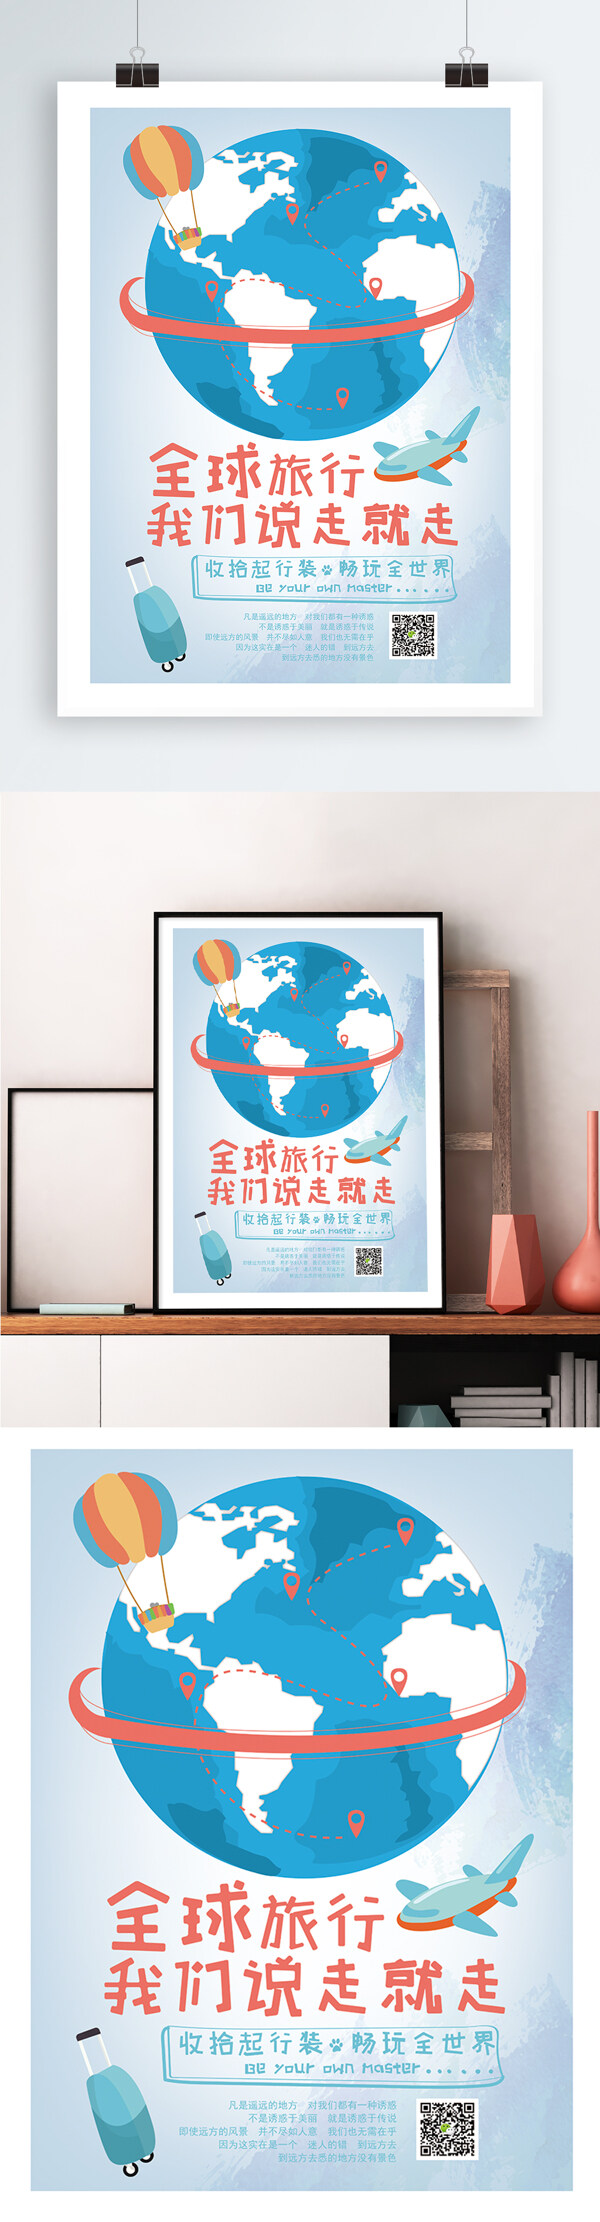 小清新旅游插画海报AI矢量